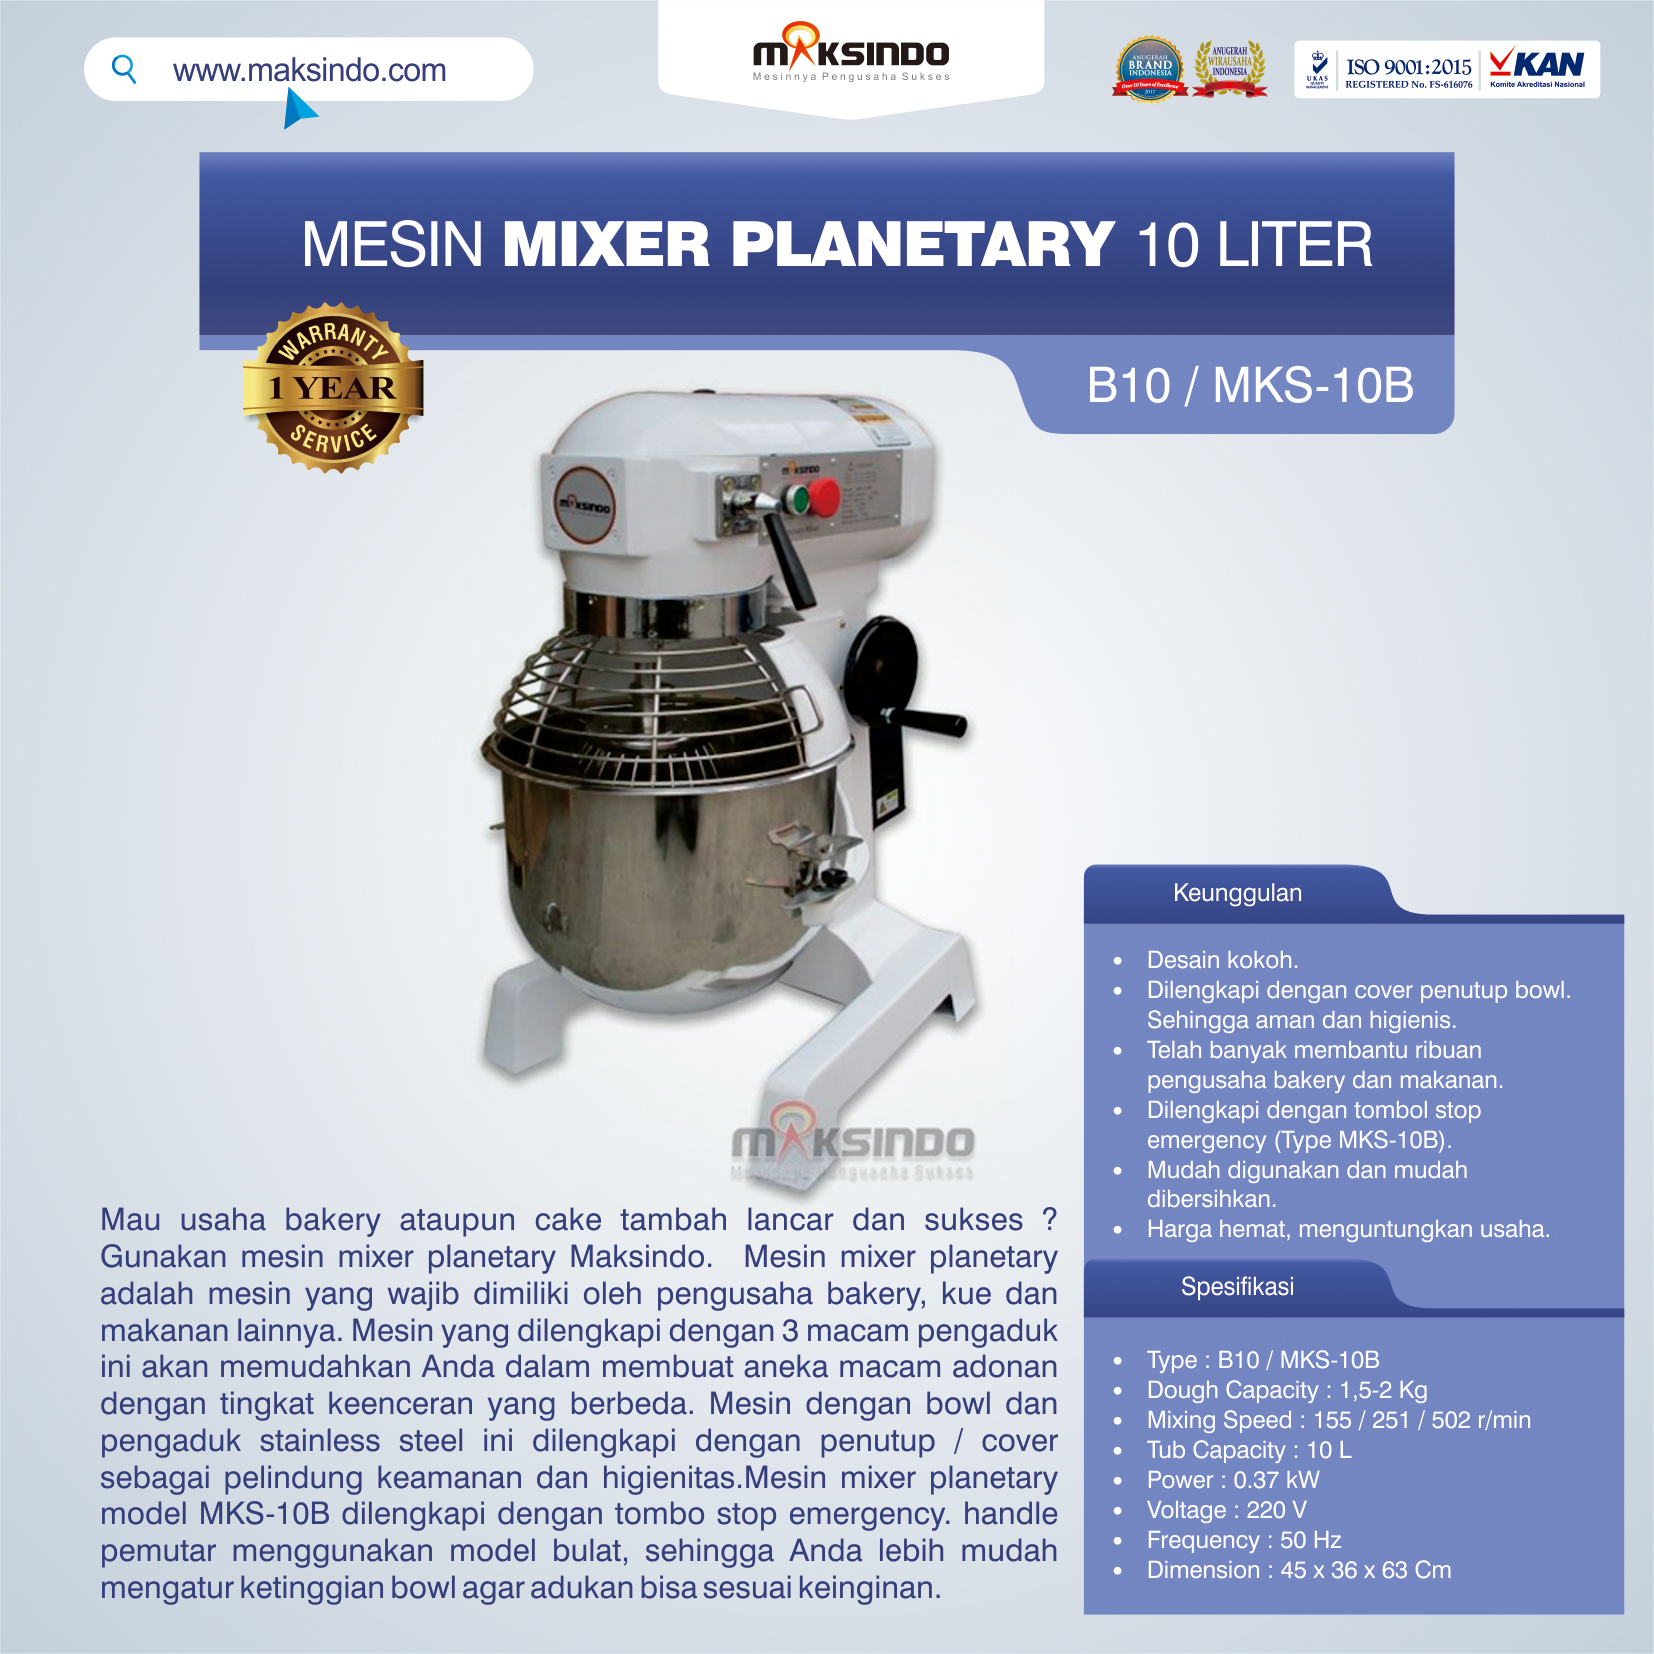 Jual Mesin Mixer Planetary 10 Liter (MKS-10B) di Bekasi